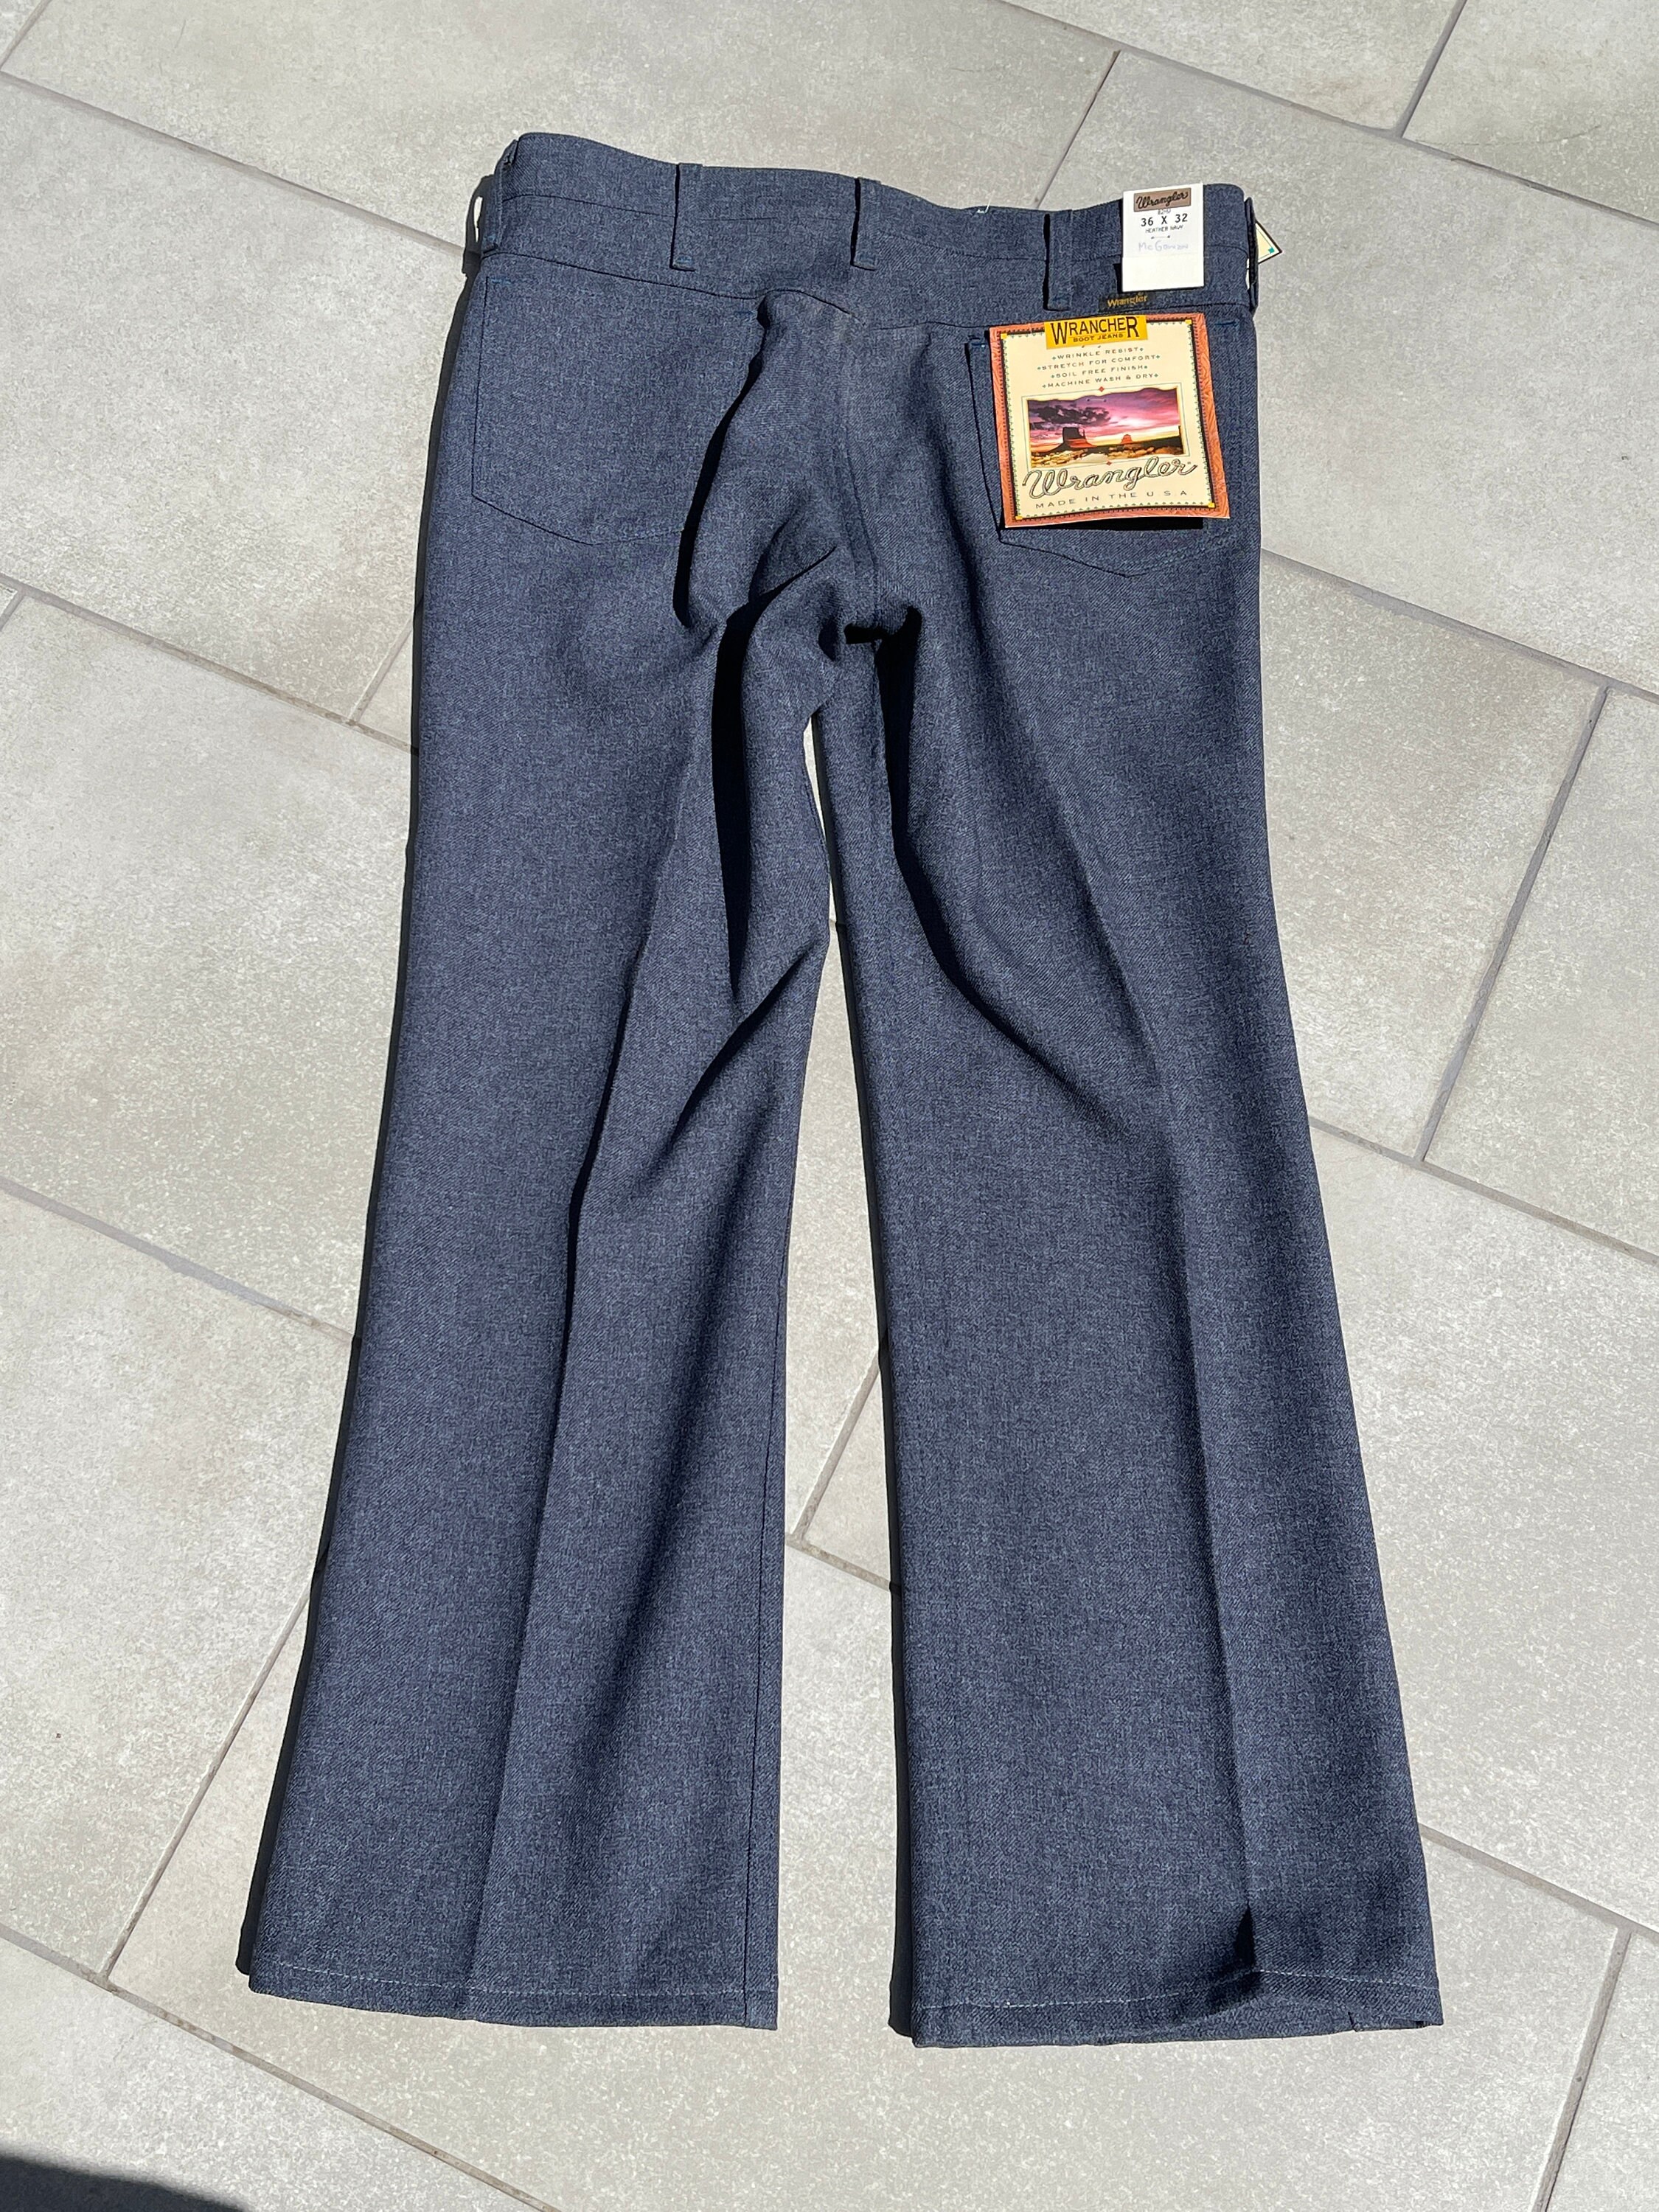 wrangler wrancher dress jeans w33 l30 黒 - スラックス